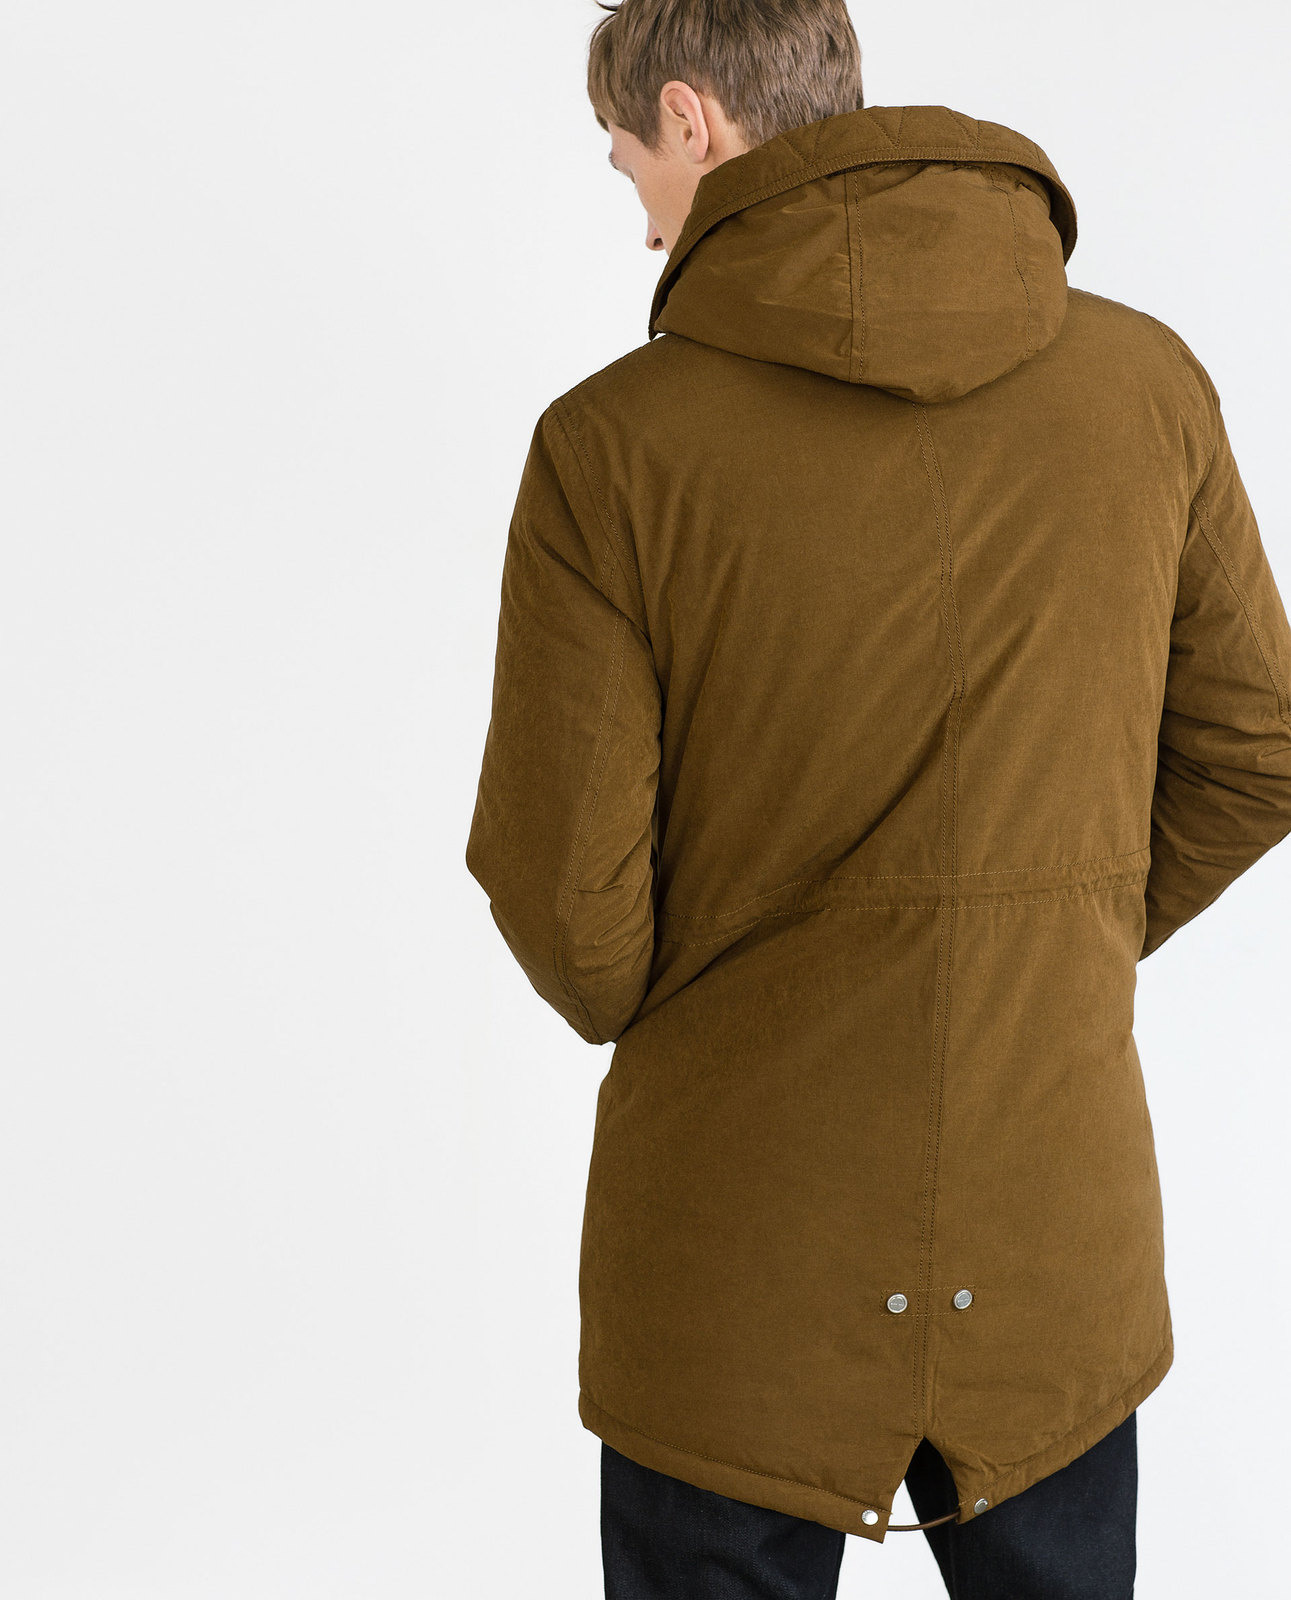 Zara barna férfi télikabát 2015.10.15 #89035 fotója